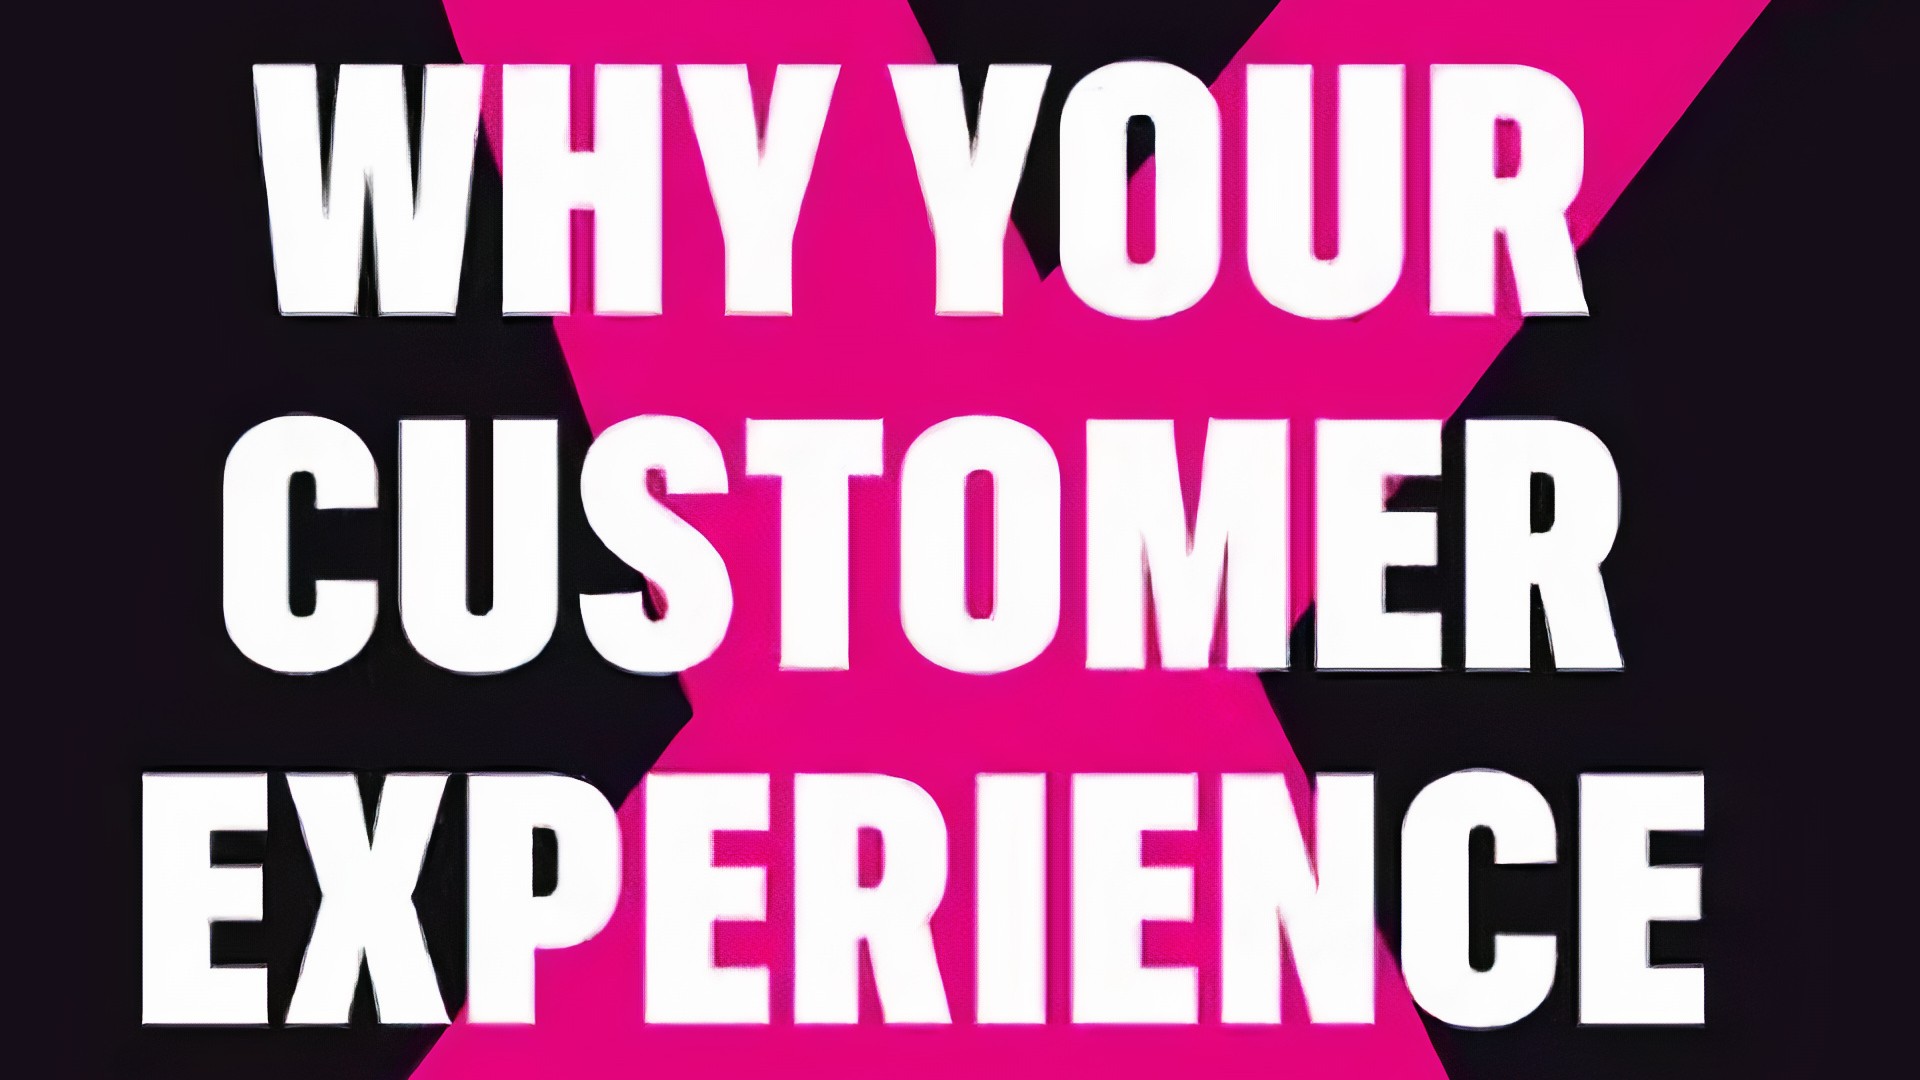 Waarom veel customer experience programma's mislukken